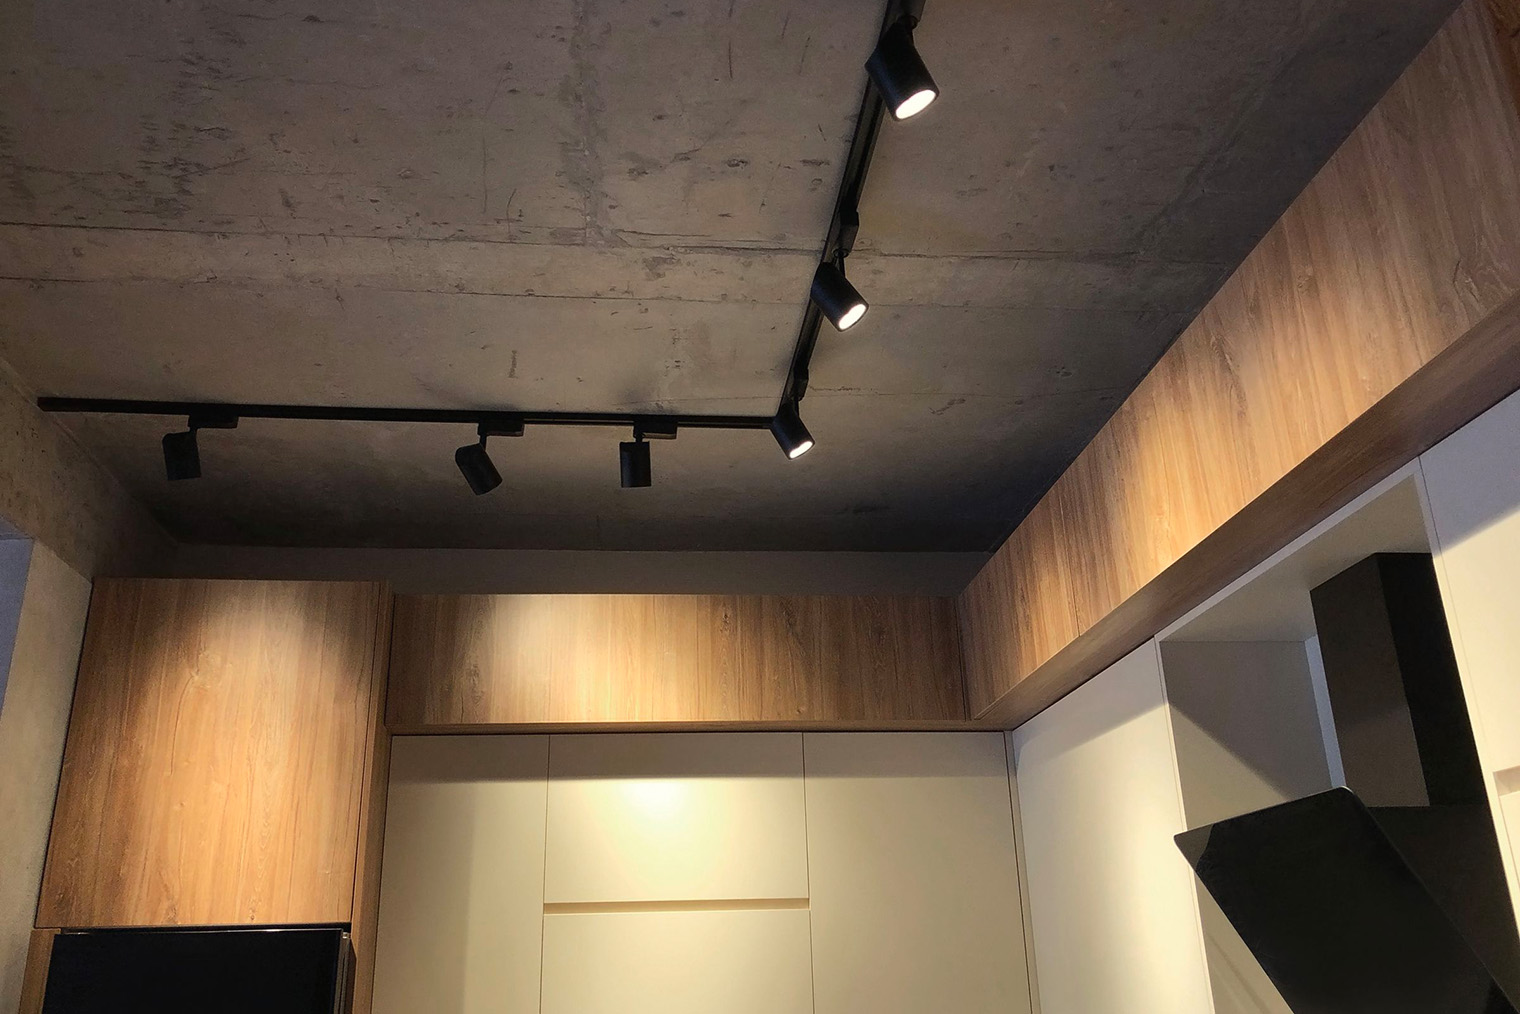 На кухне точечные светильники позволяют подсветить не только рабочую зону, но и колонну с микроволновой печью и духовым шкафом, отдельные шкафы и фасады. Фотография: Rohappy / iStock